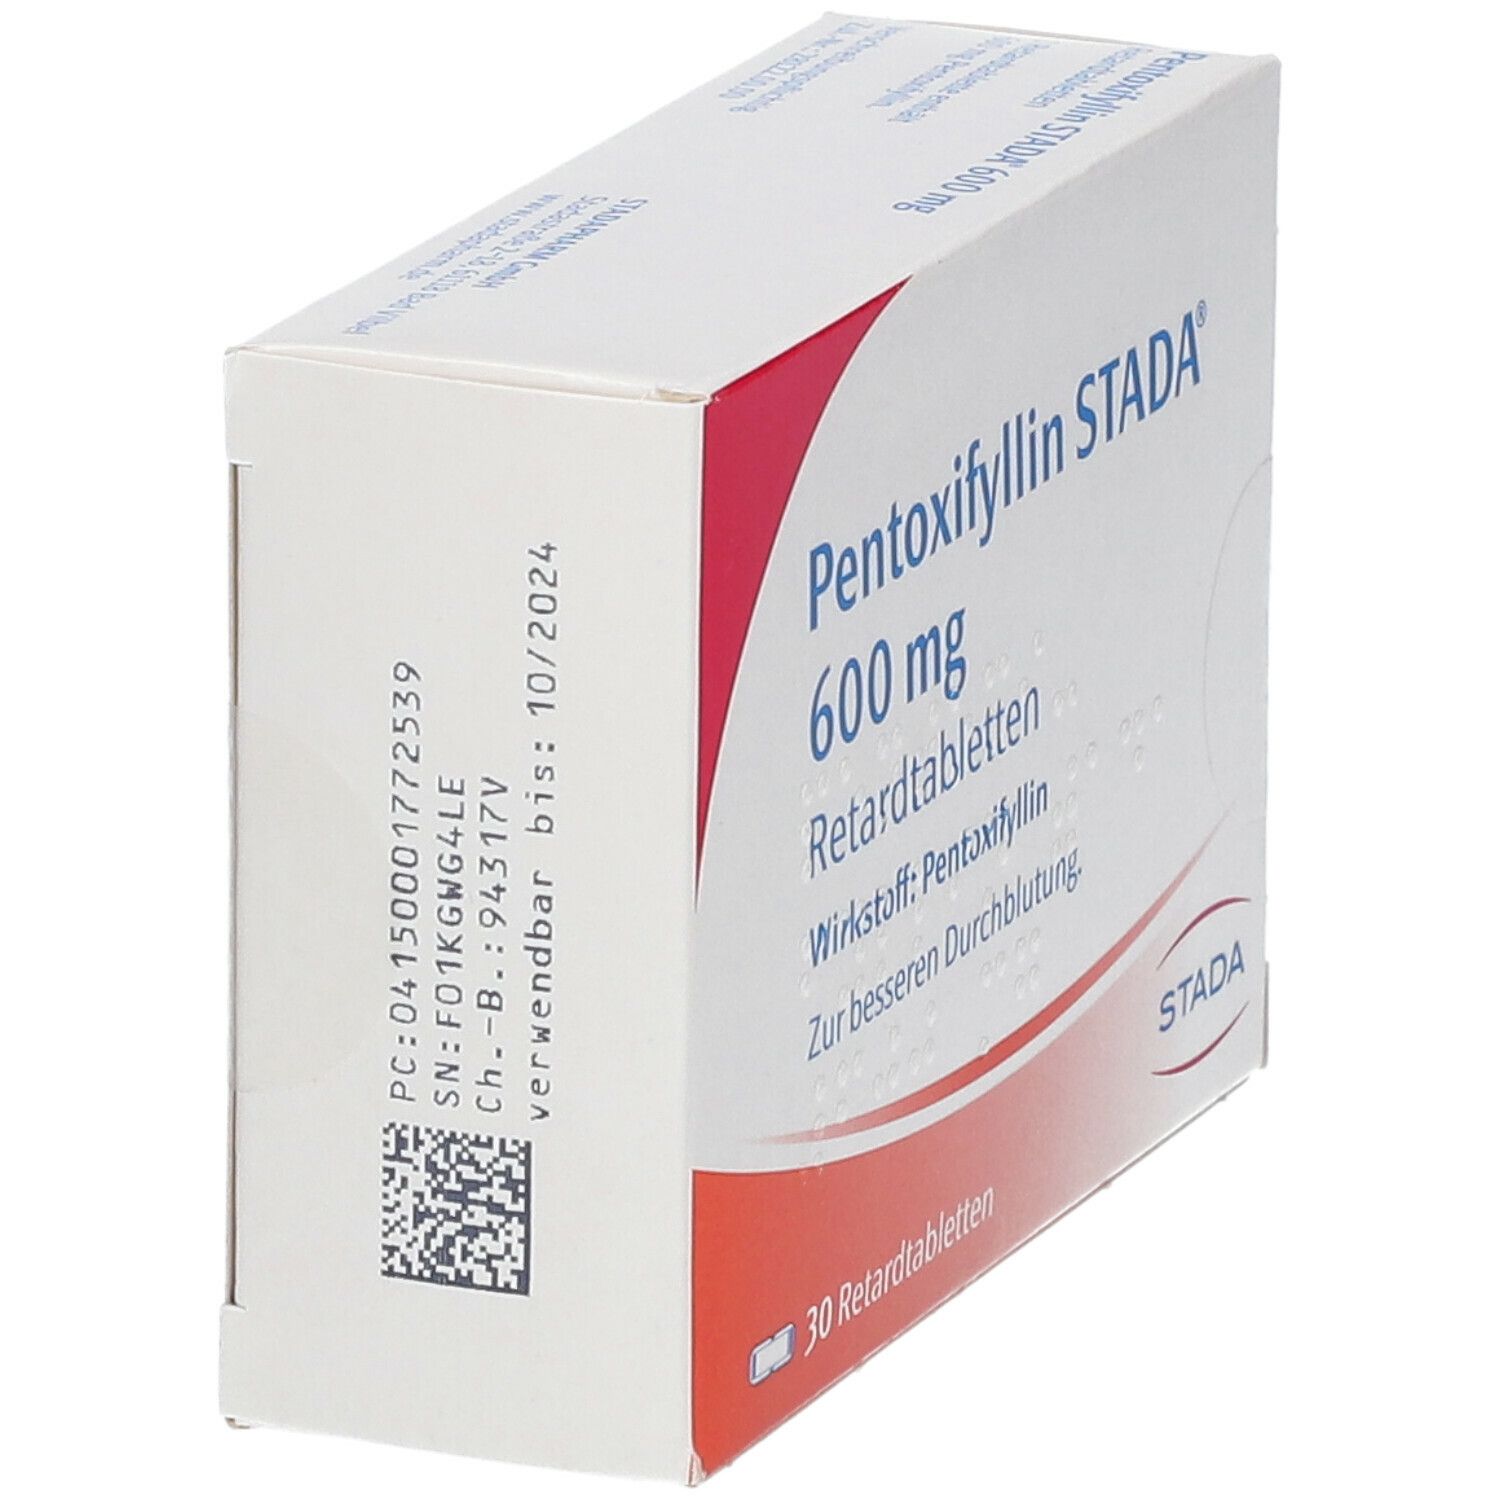 Pentoxifyllin STADA® 600 mg Retardtabletten